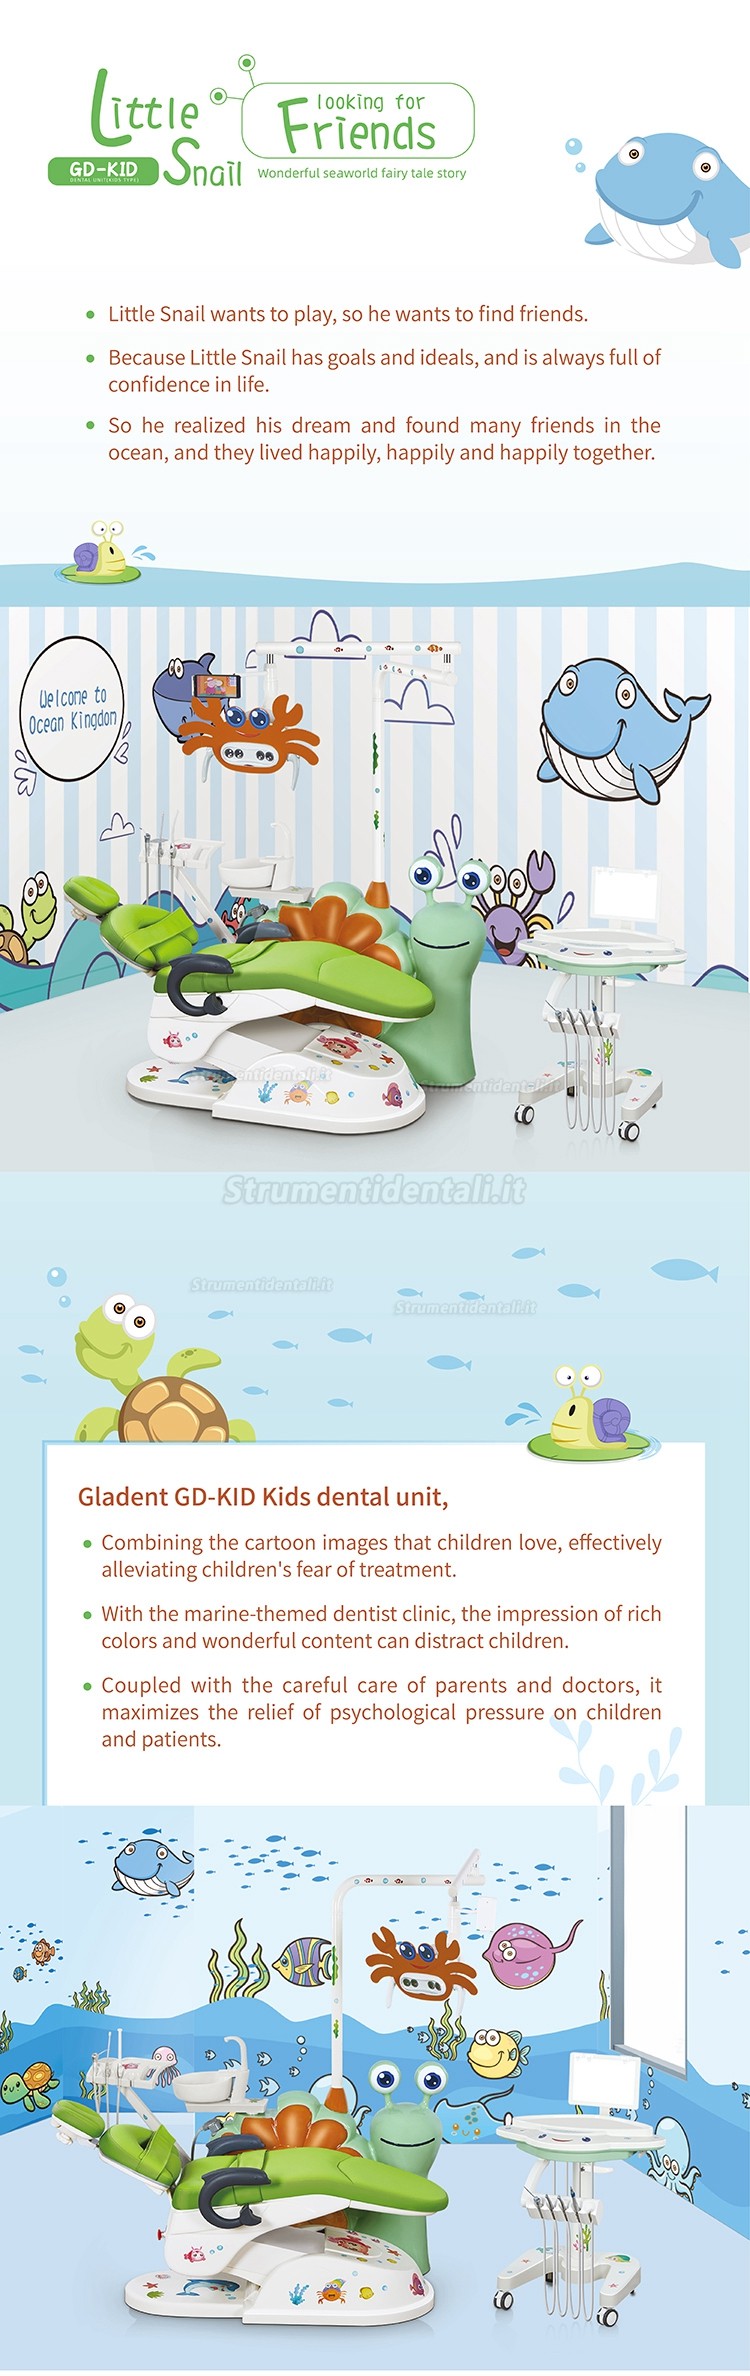 Poltrona odontoiatrica elettrica per bambini / Riunito odontoiatrico per bambini Gladent® GD-S800